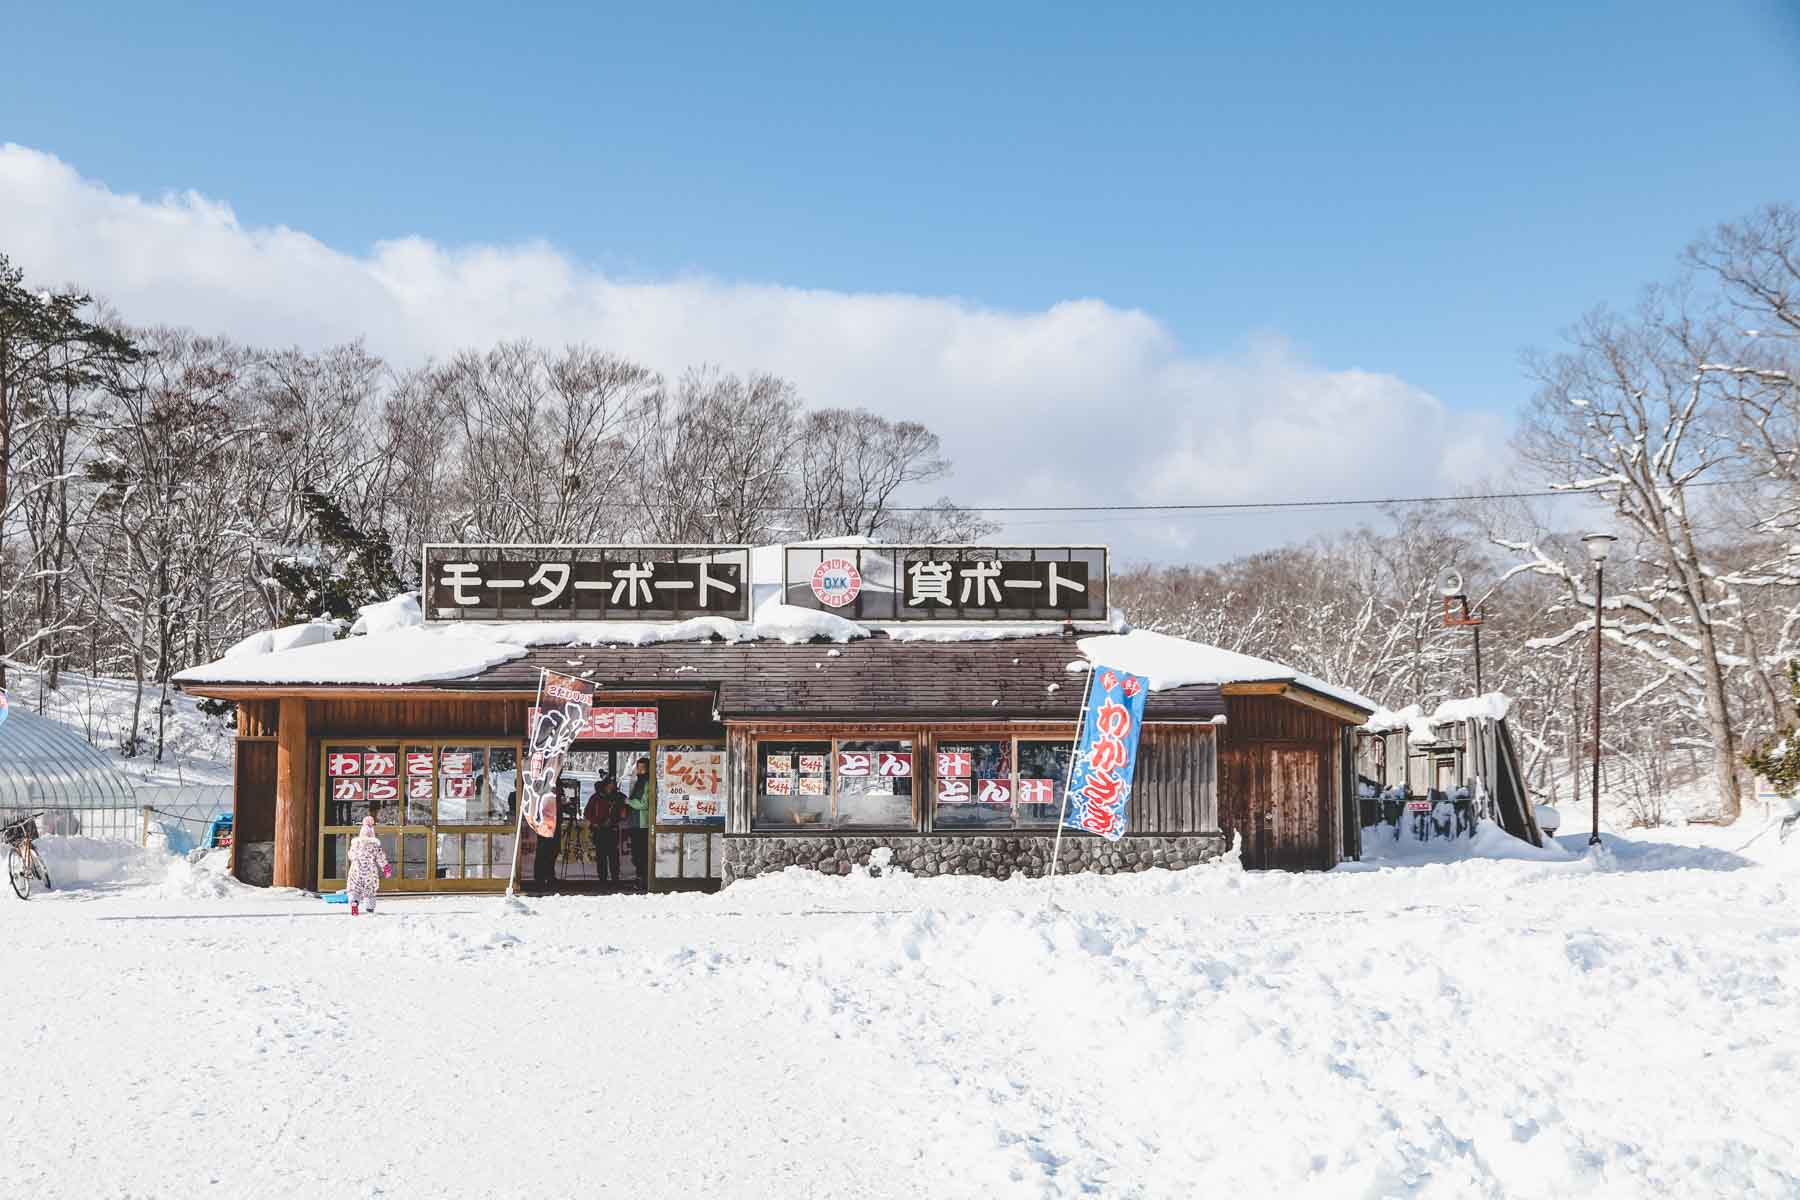 Hokkaido im Winter